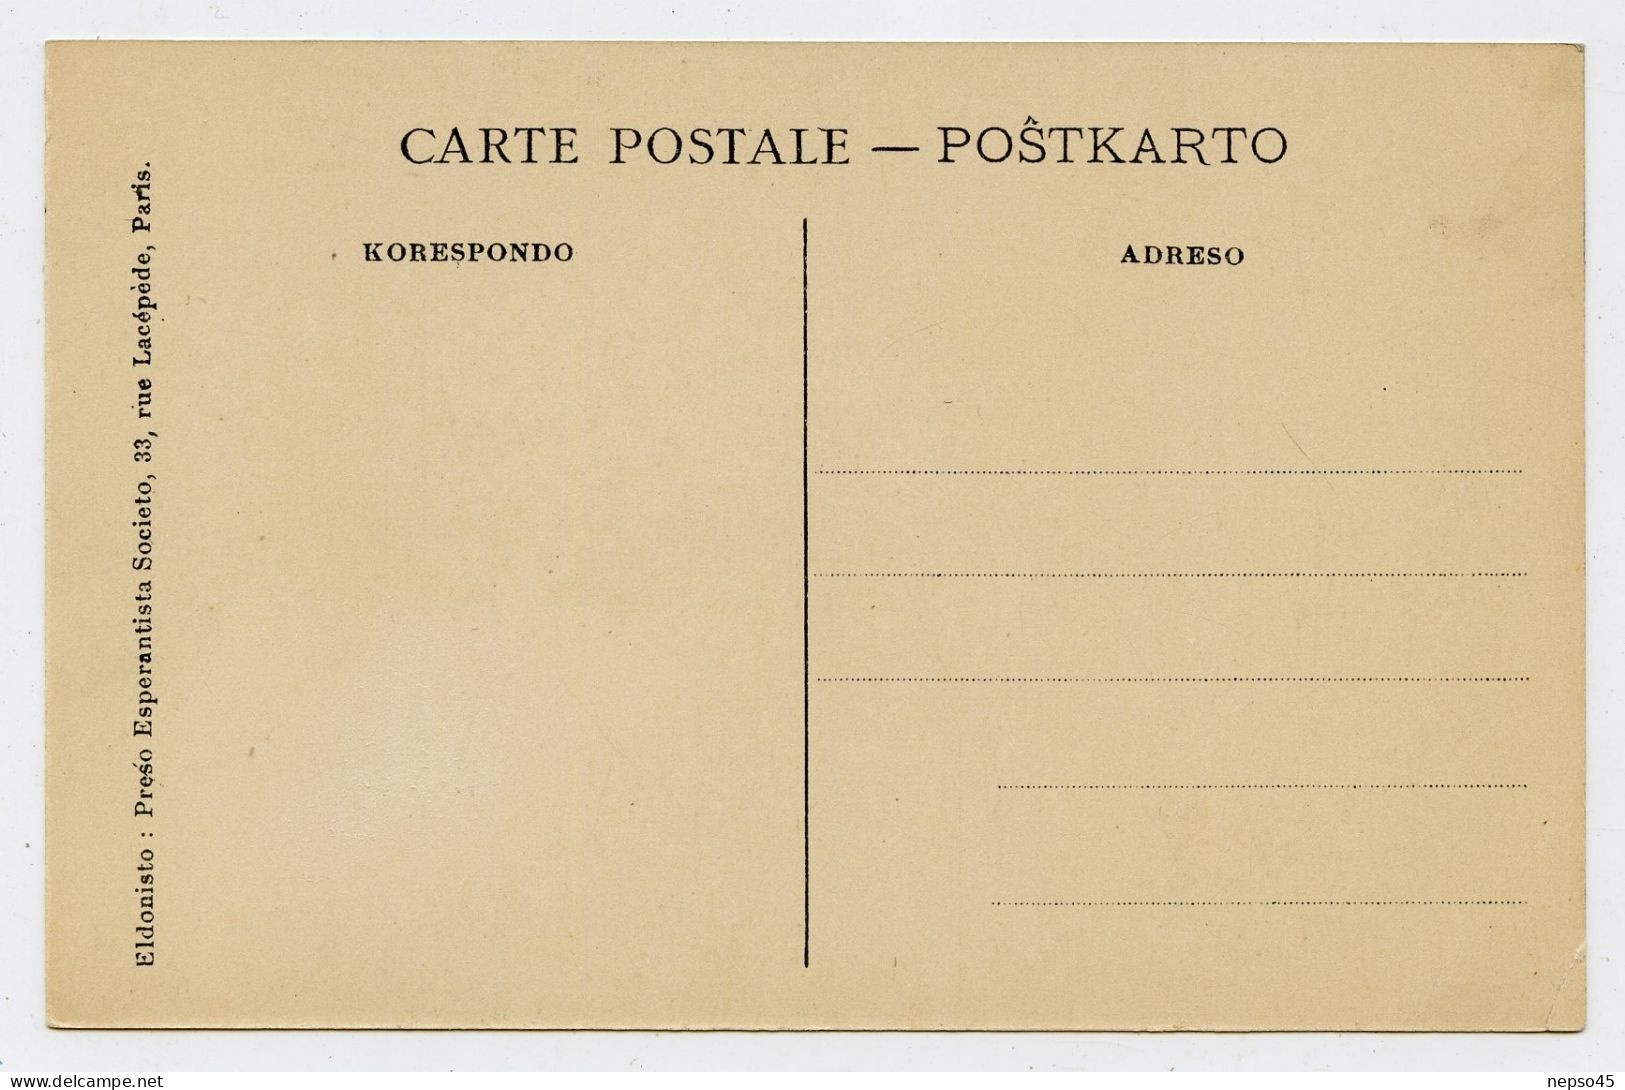 .Universala Kongreso de esperanto Paris 2-10 augusto 1914.Gaumont-Palace.langue internationale 120 pays dans le monde.